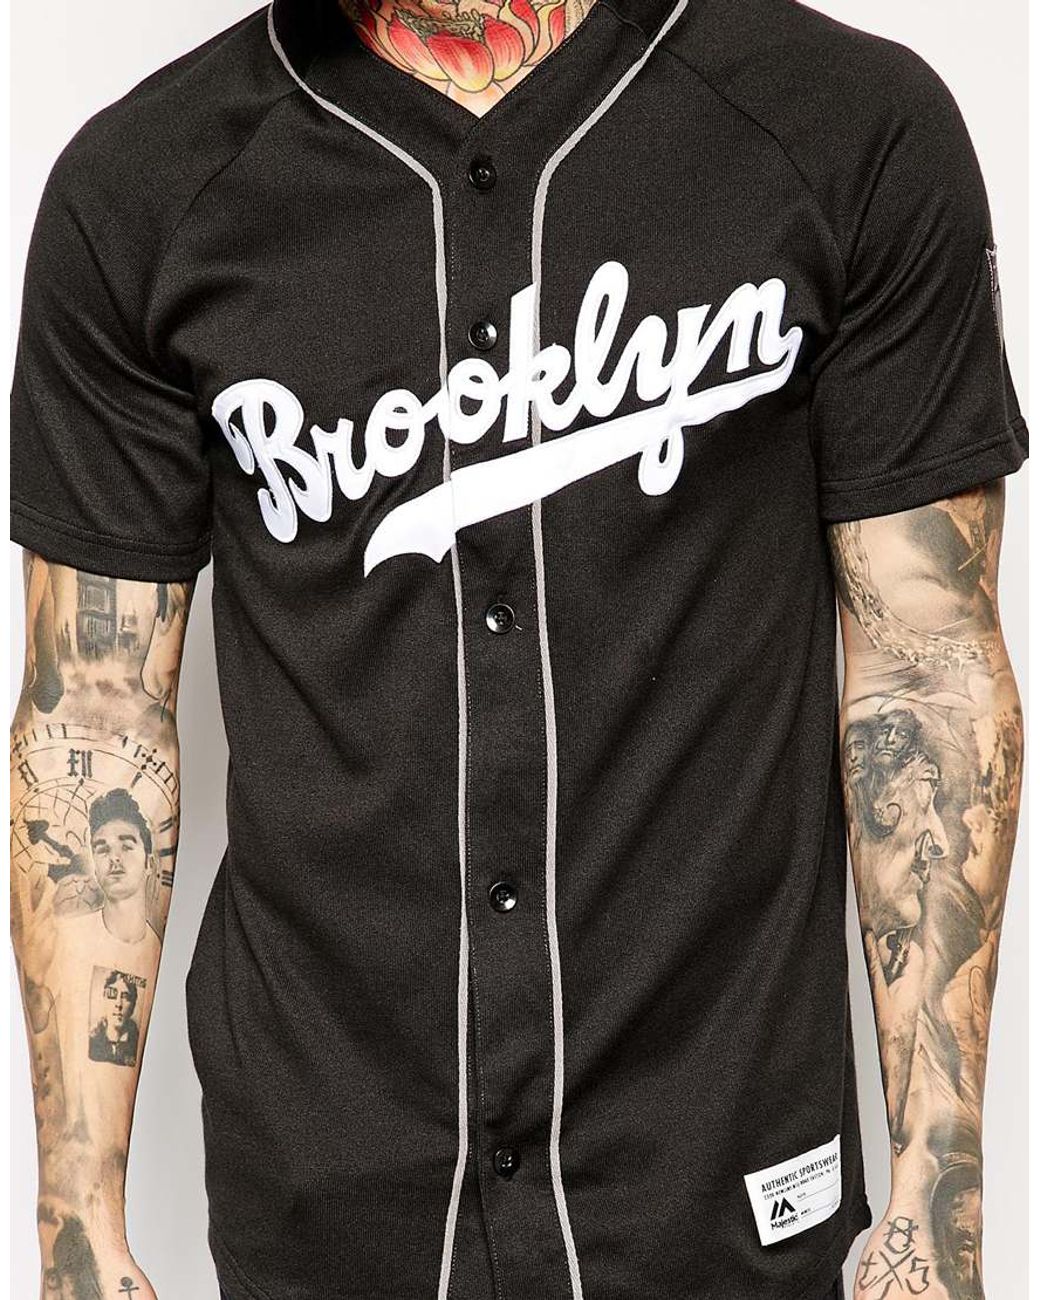 Majestic Brooklyn Dodgers Baseball Jersey in Black for Men